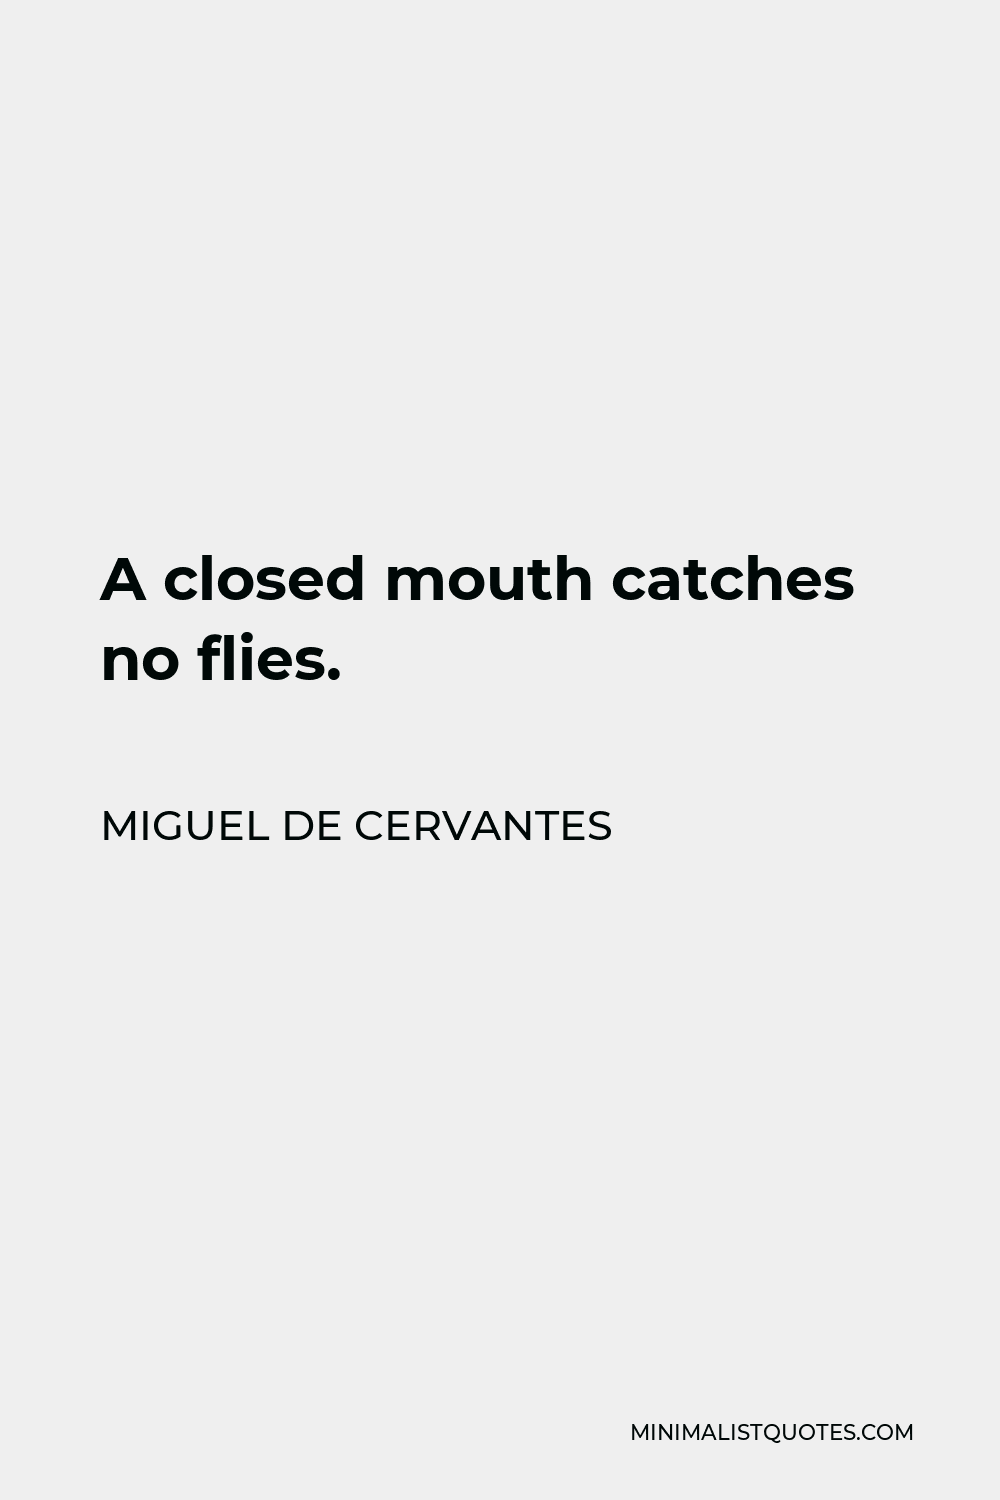 Miguel de Cervantes Quote - A closed mouth catches no flies.